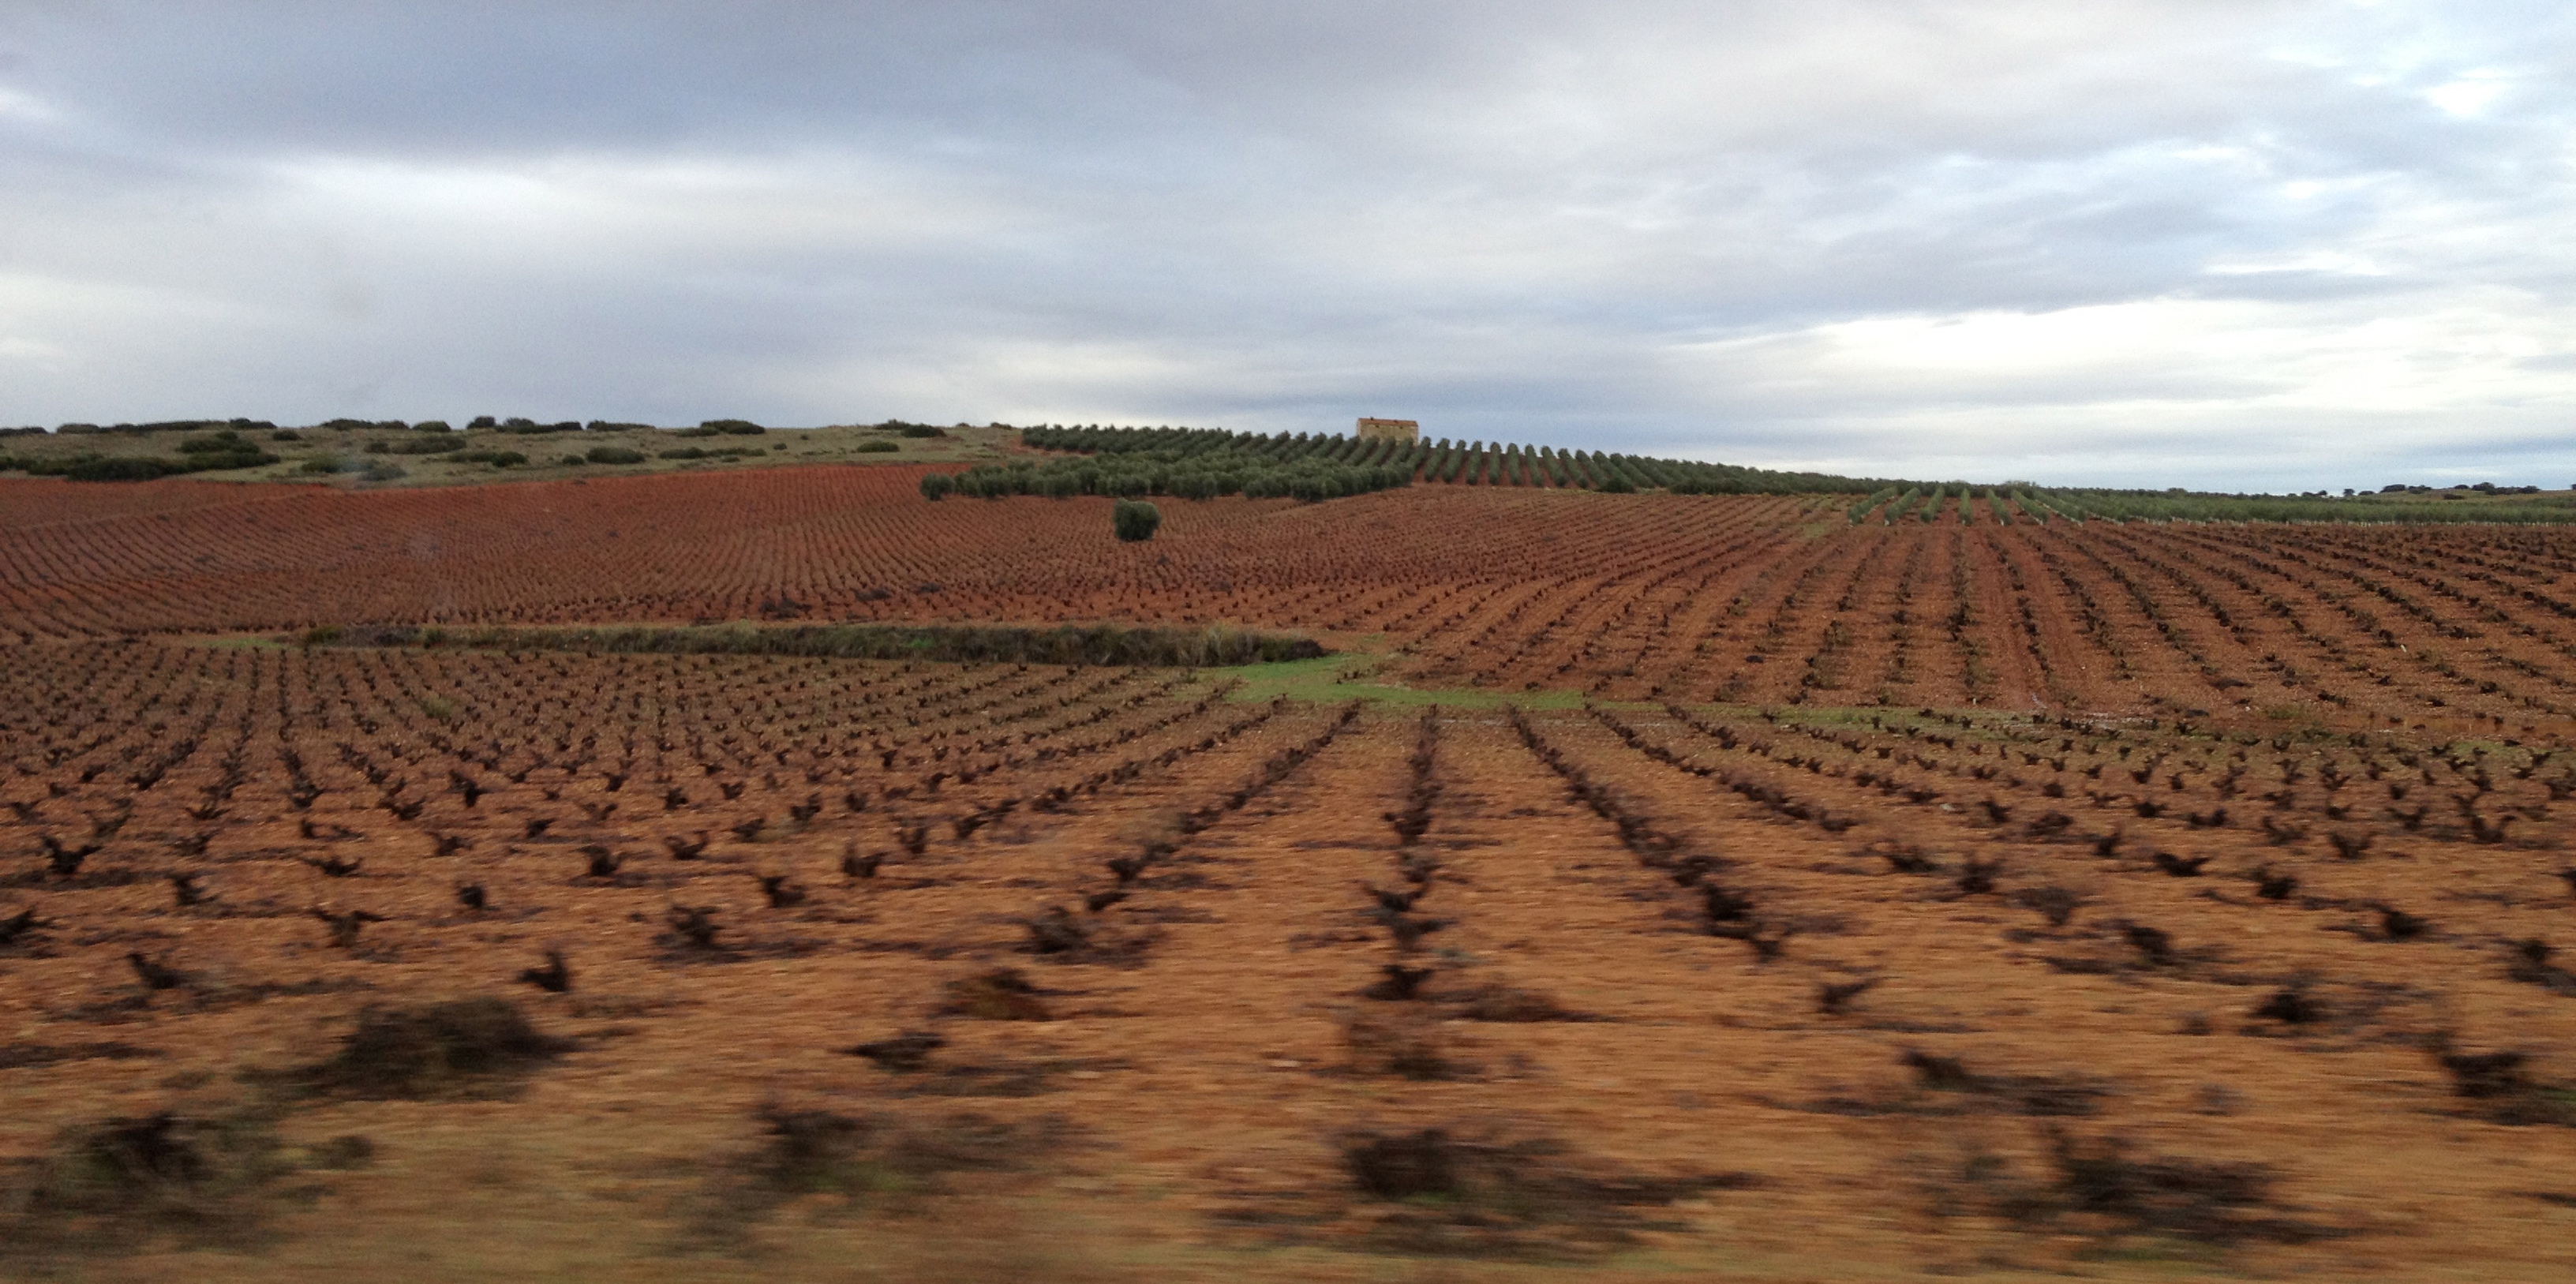 The arid land of Valdepeñas in Spain